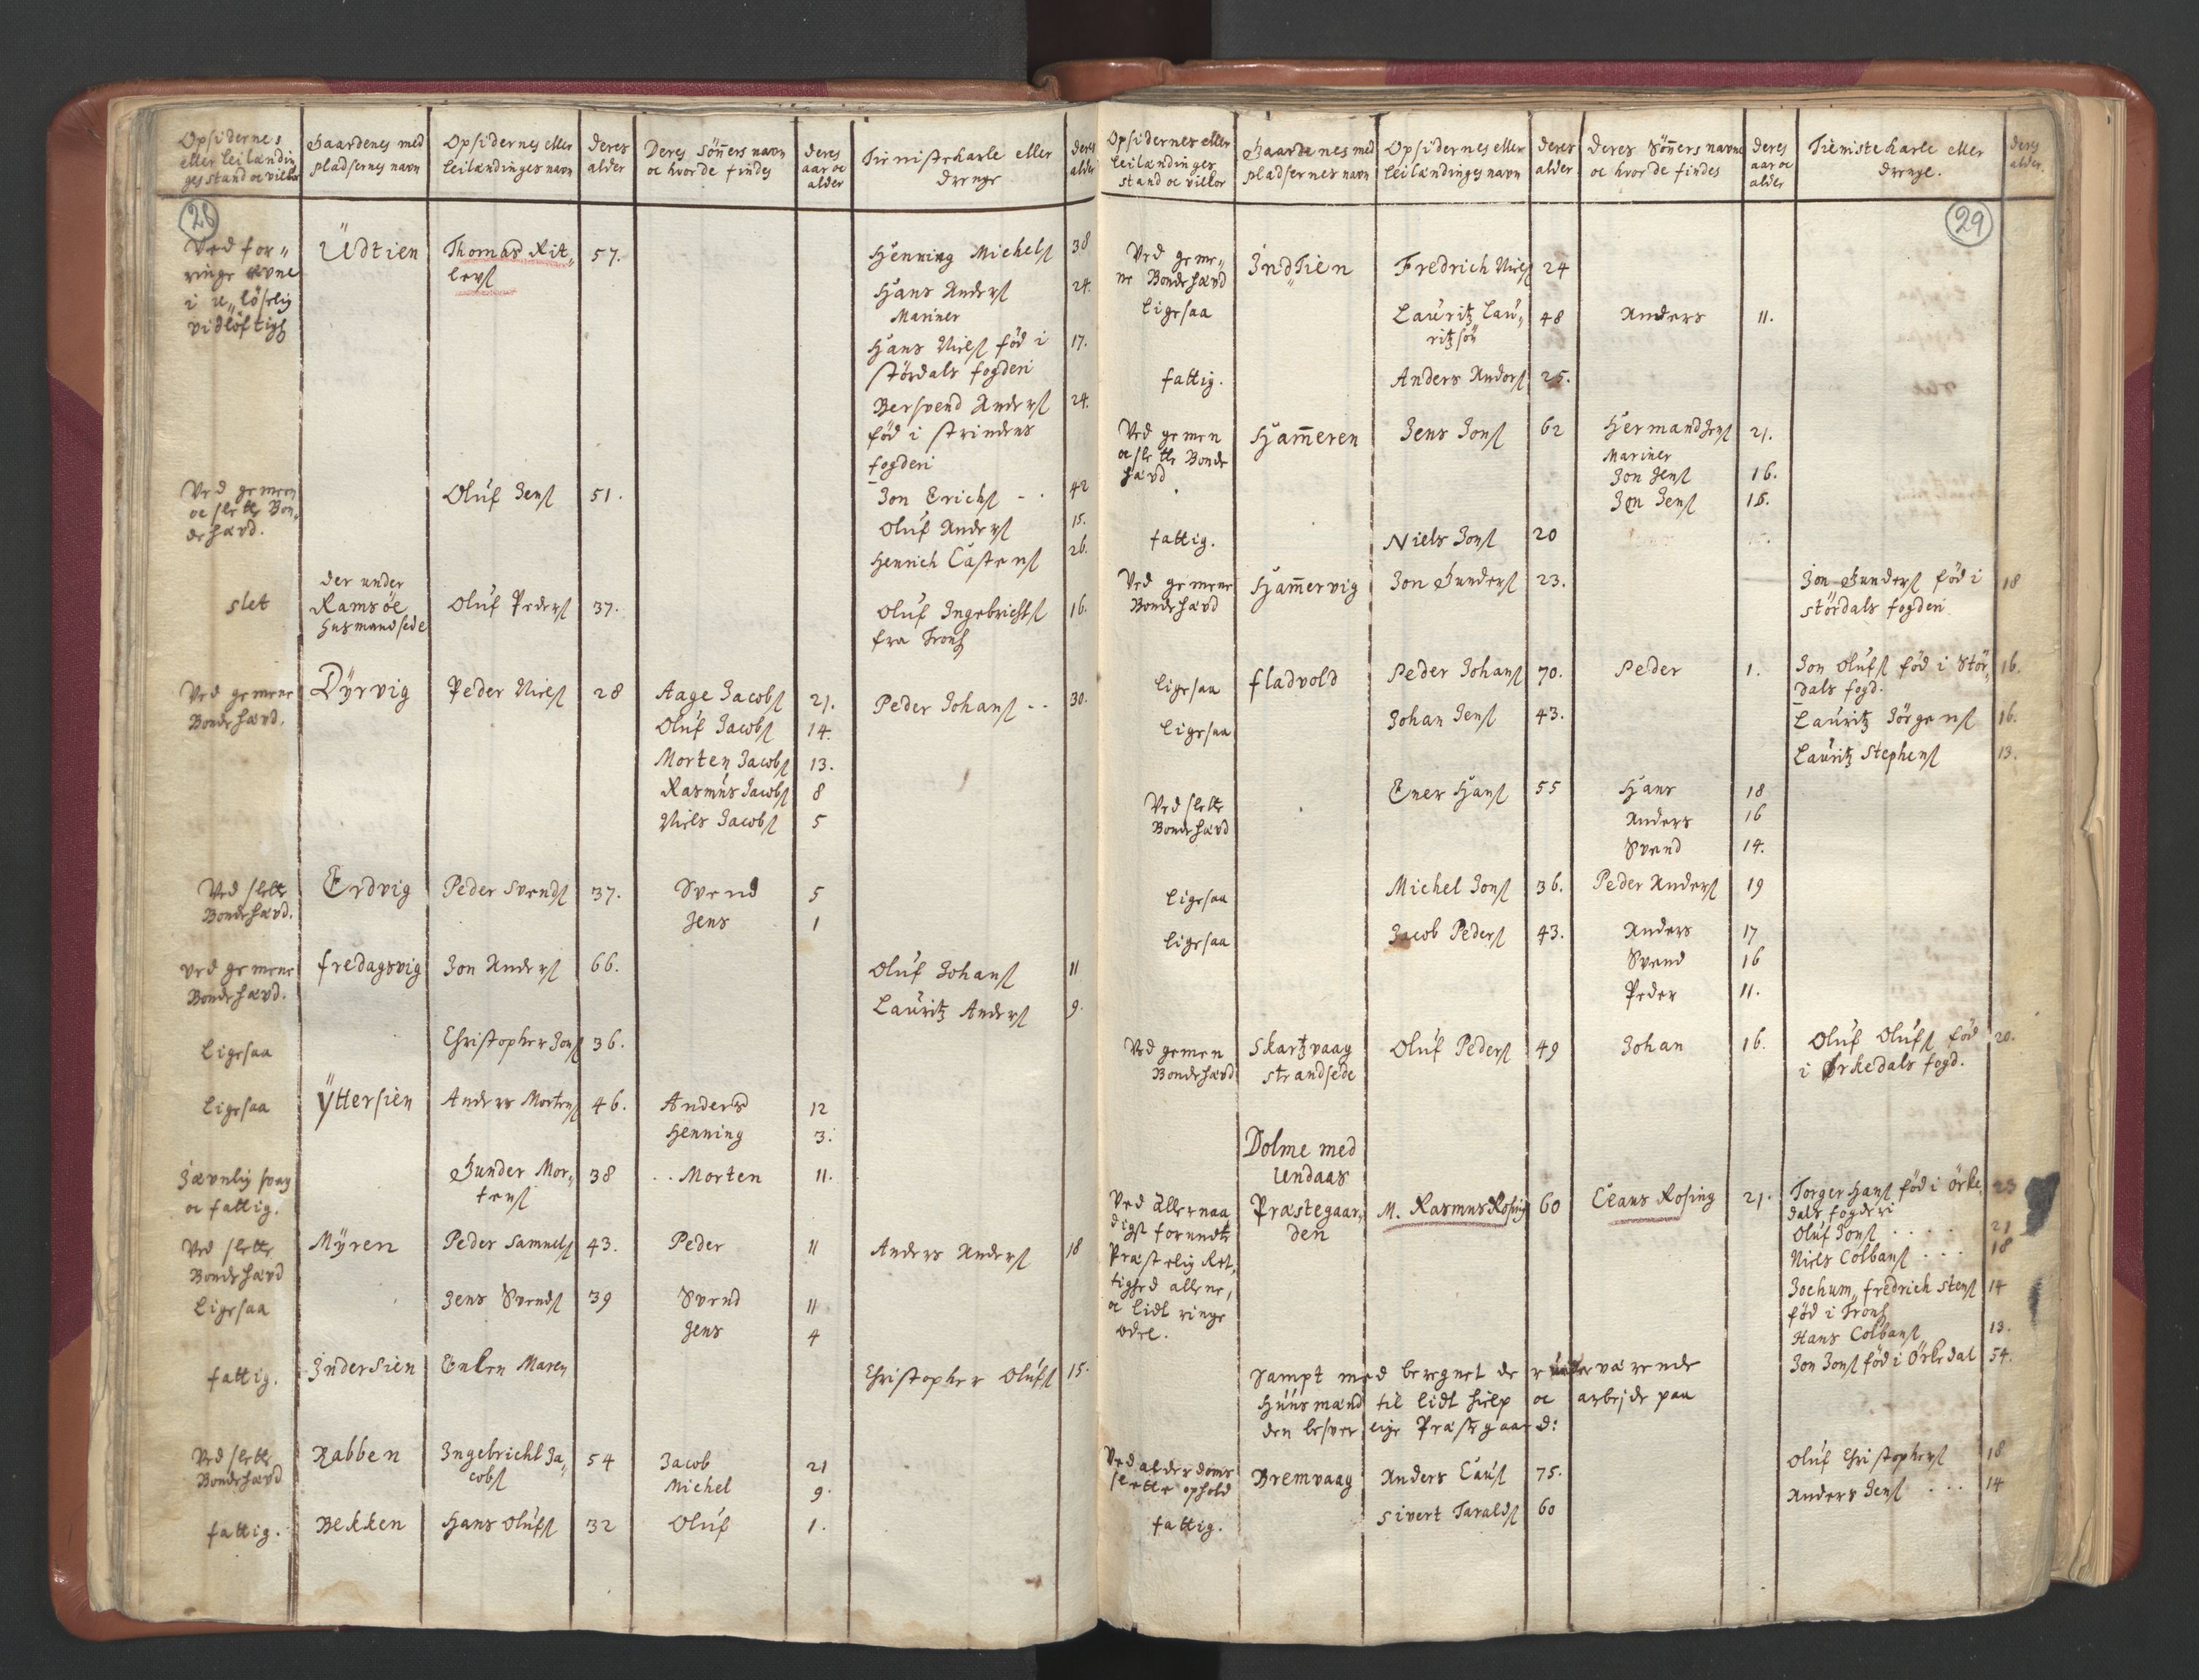 RA, Manntallet 1701, nr. 12: Fosen fogderi, 1701, s. 28-29